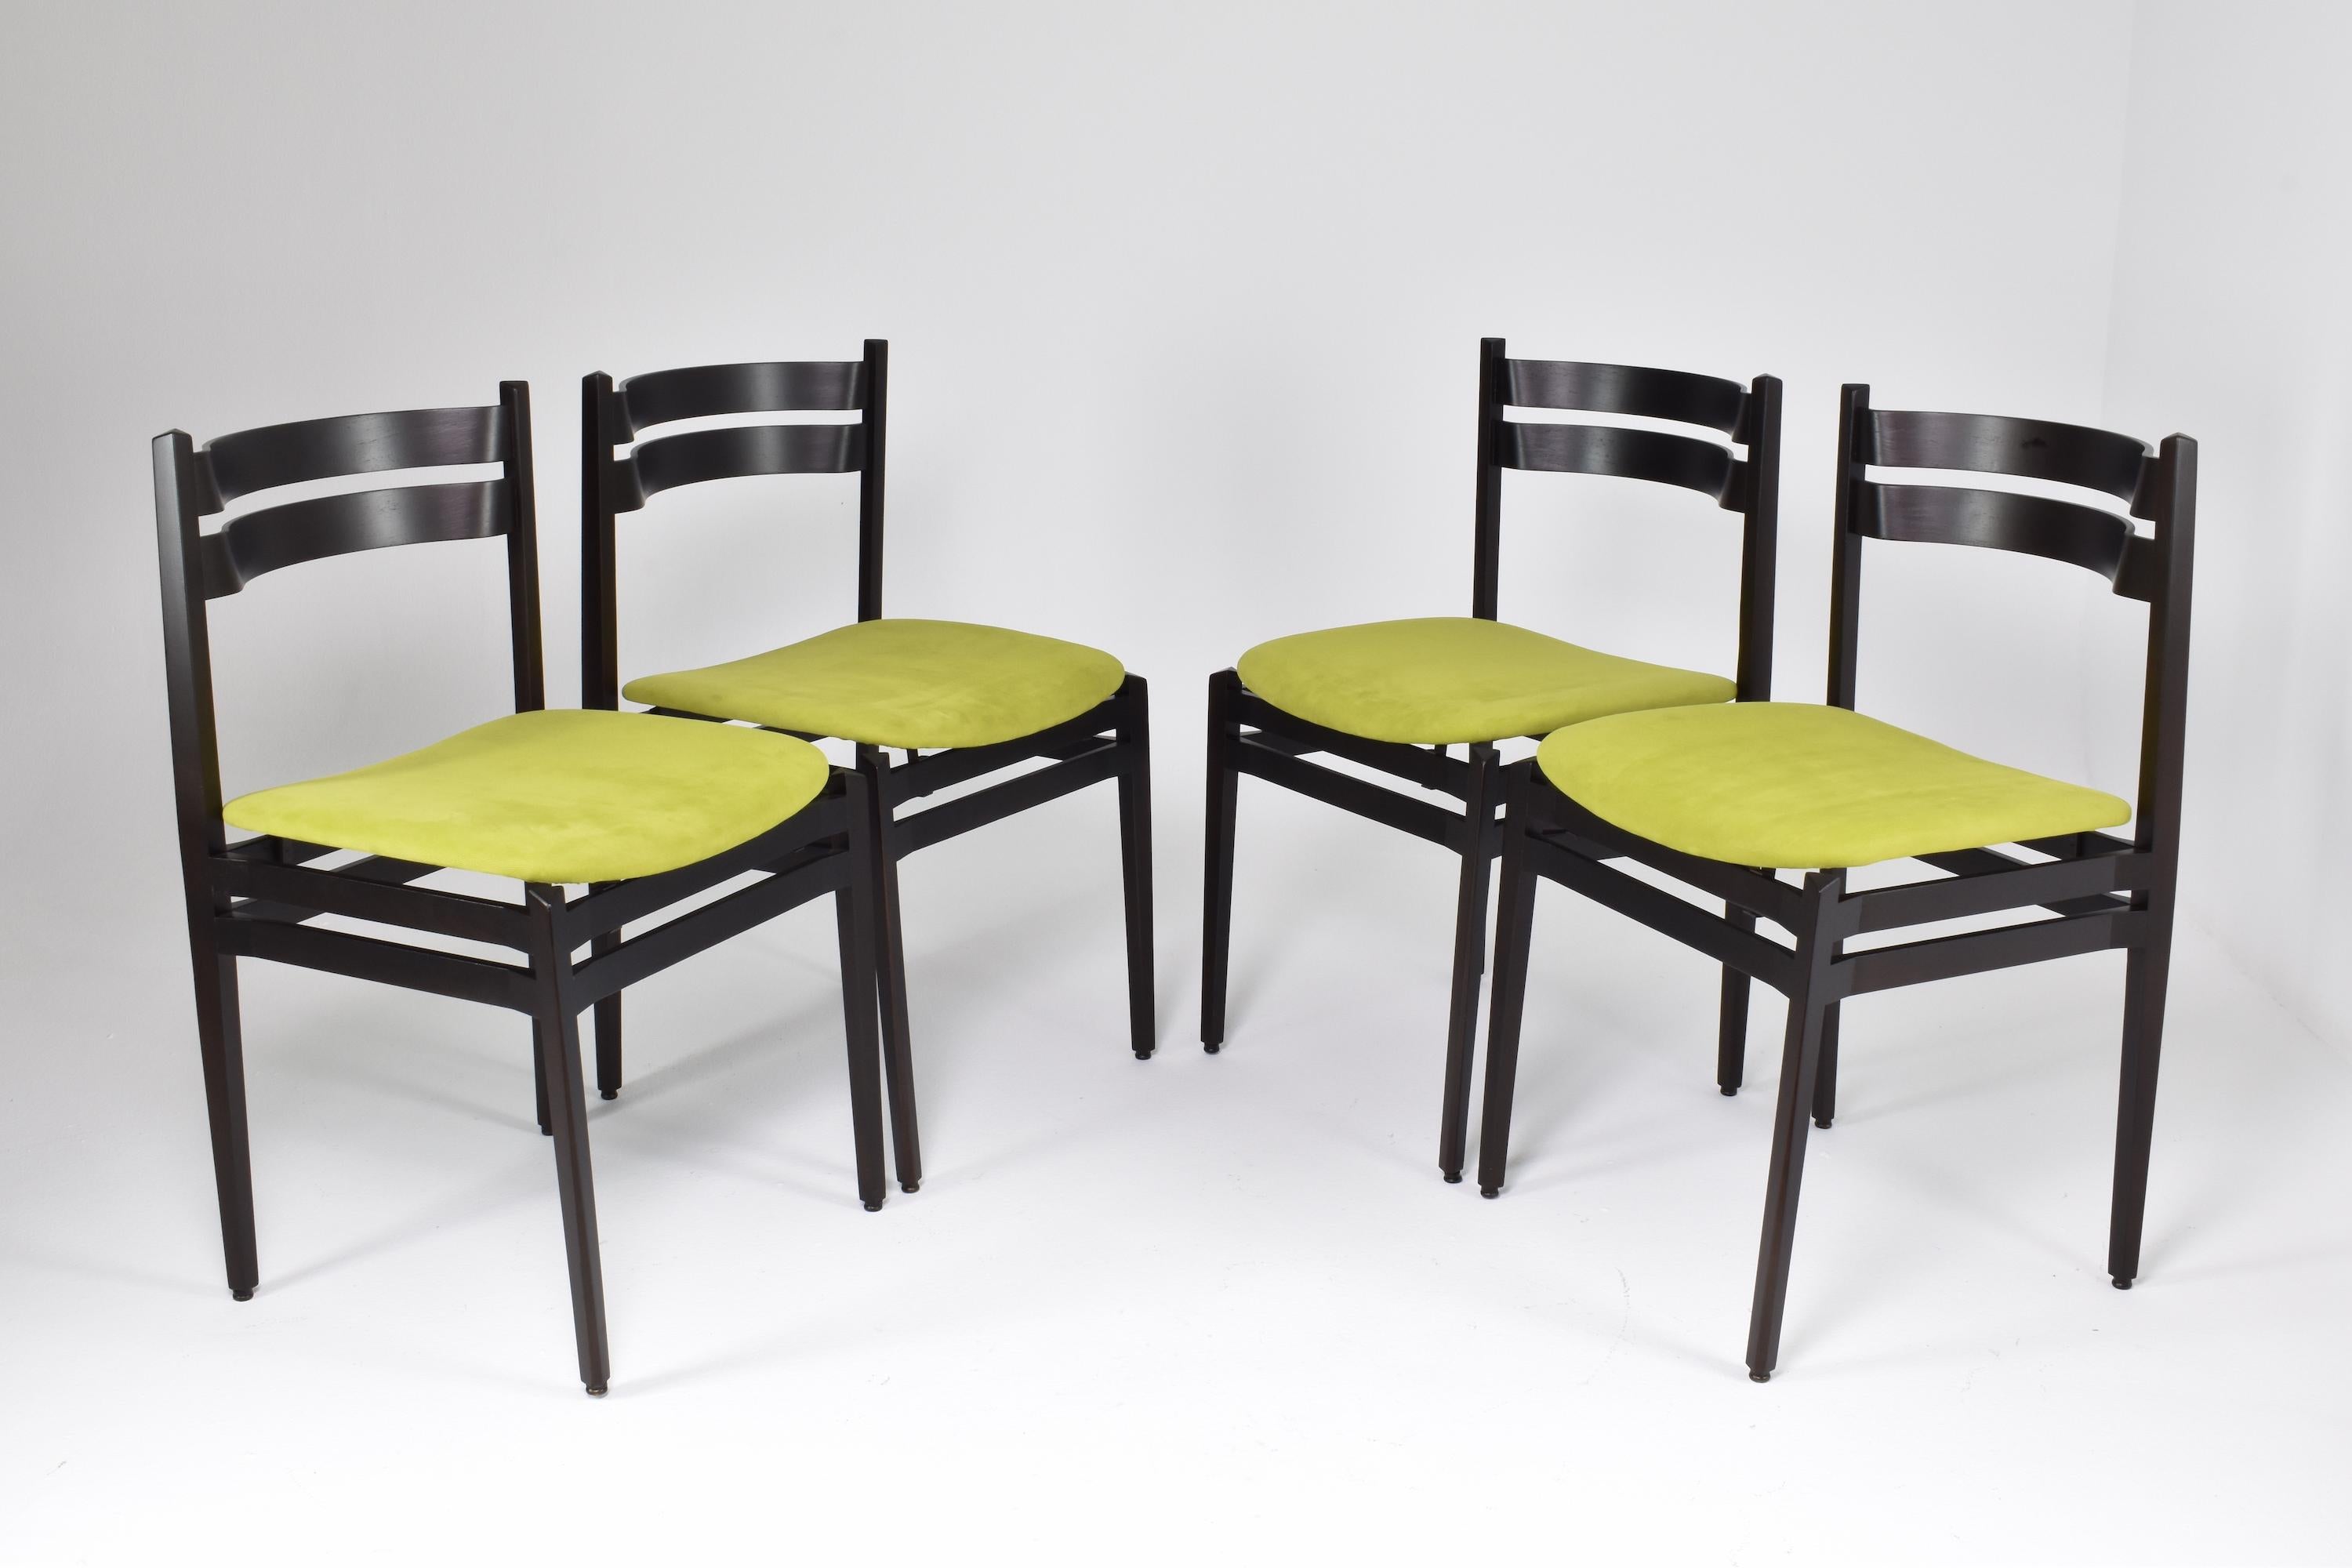 Les chaises du modèle 107 conçues par Gianfranco Frattini pour Cassina dans les années 1960 sont très appréciées pour leur élégance et leur understated design. Ces chaises de salle à manger de collection se caractérisent par leurs lignes épurées et